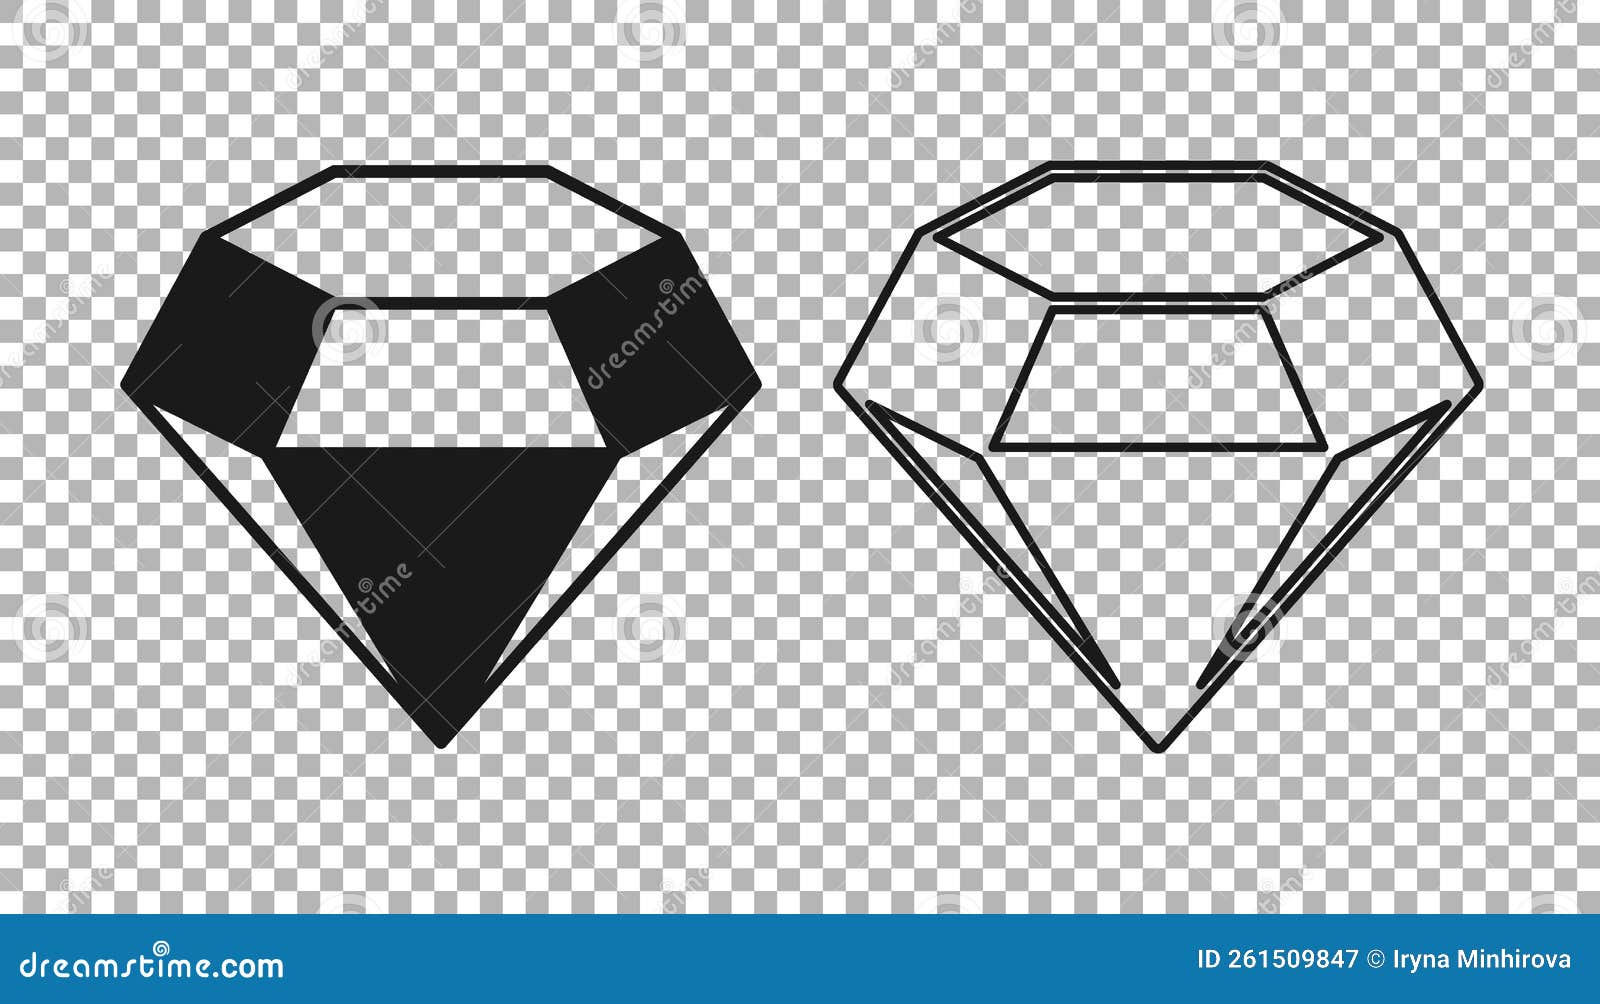 Diamond symbols. Black gems isolated on white background. Vector